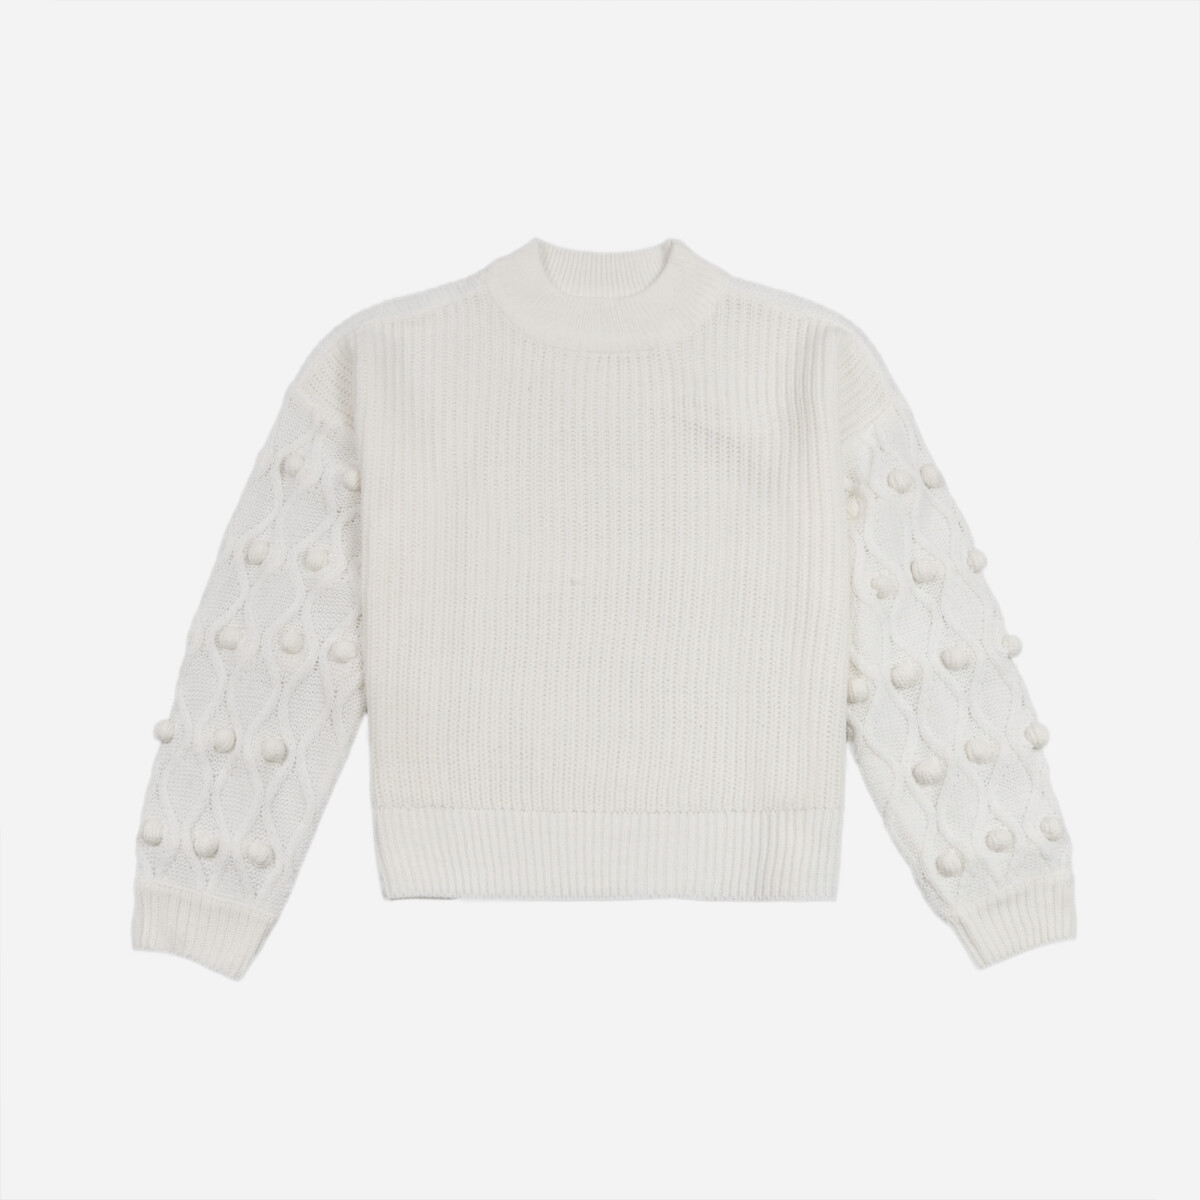 Sweater con estructura en mangas - Mujer - BLANCO 